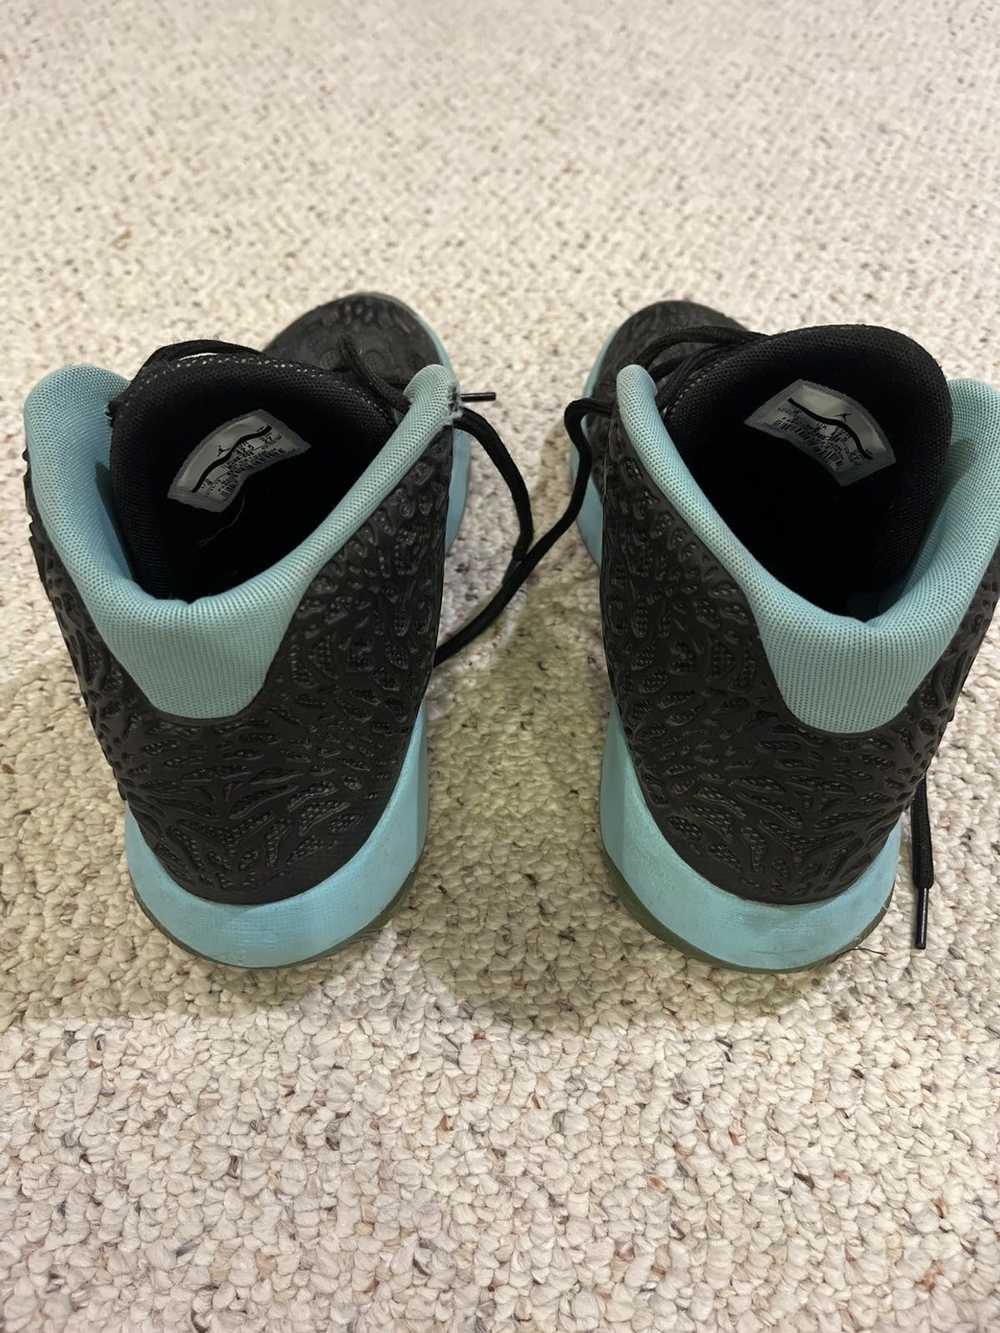 Nike Jordan ultra Fly hyper turquoise - image 3